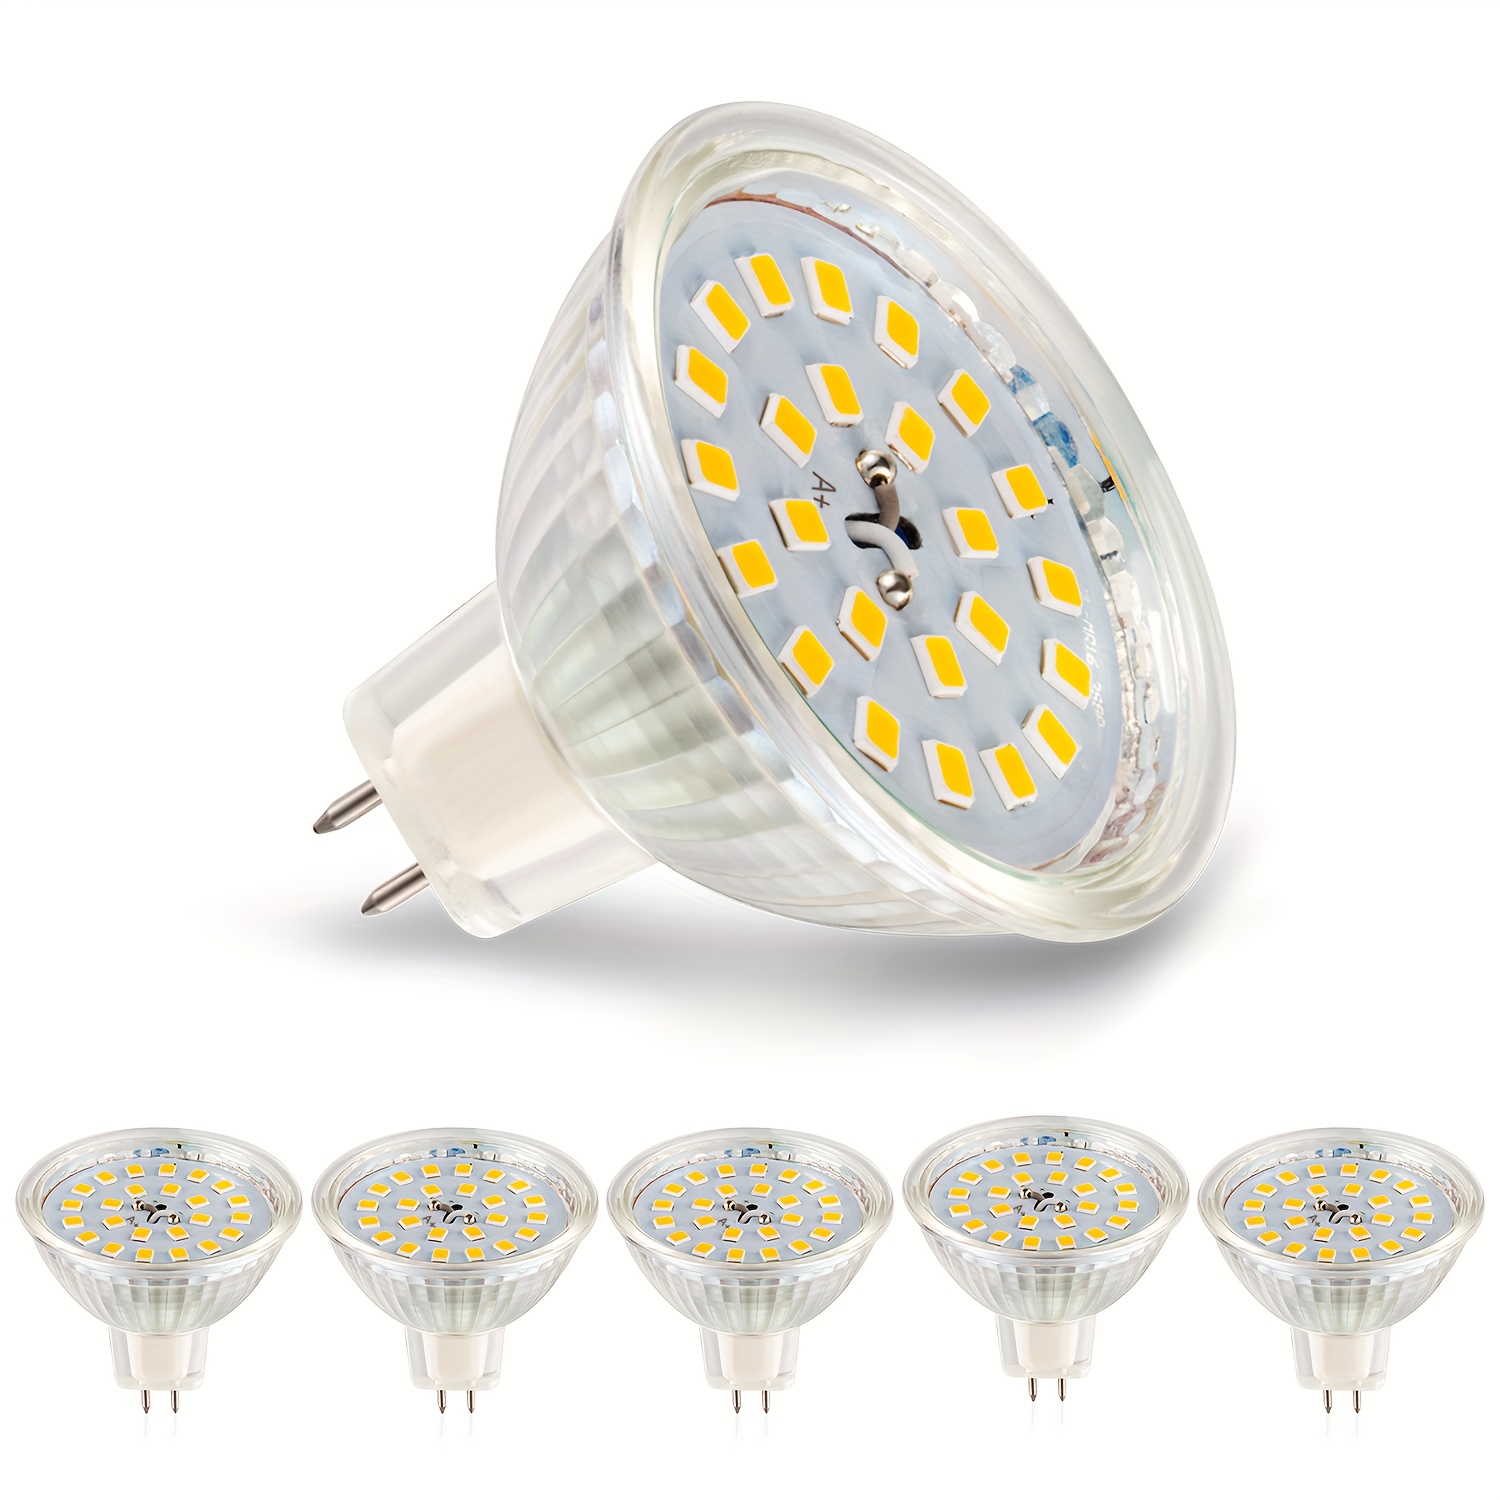 Ampoule LED G4 2W 12V Blanc Chaud 200LM, équivalent Bi Pin G4 10W